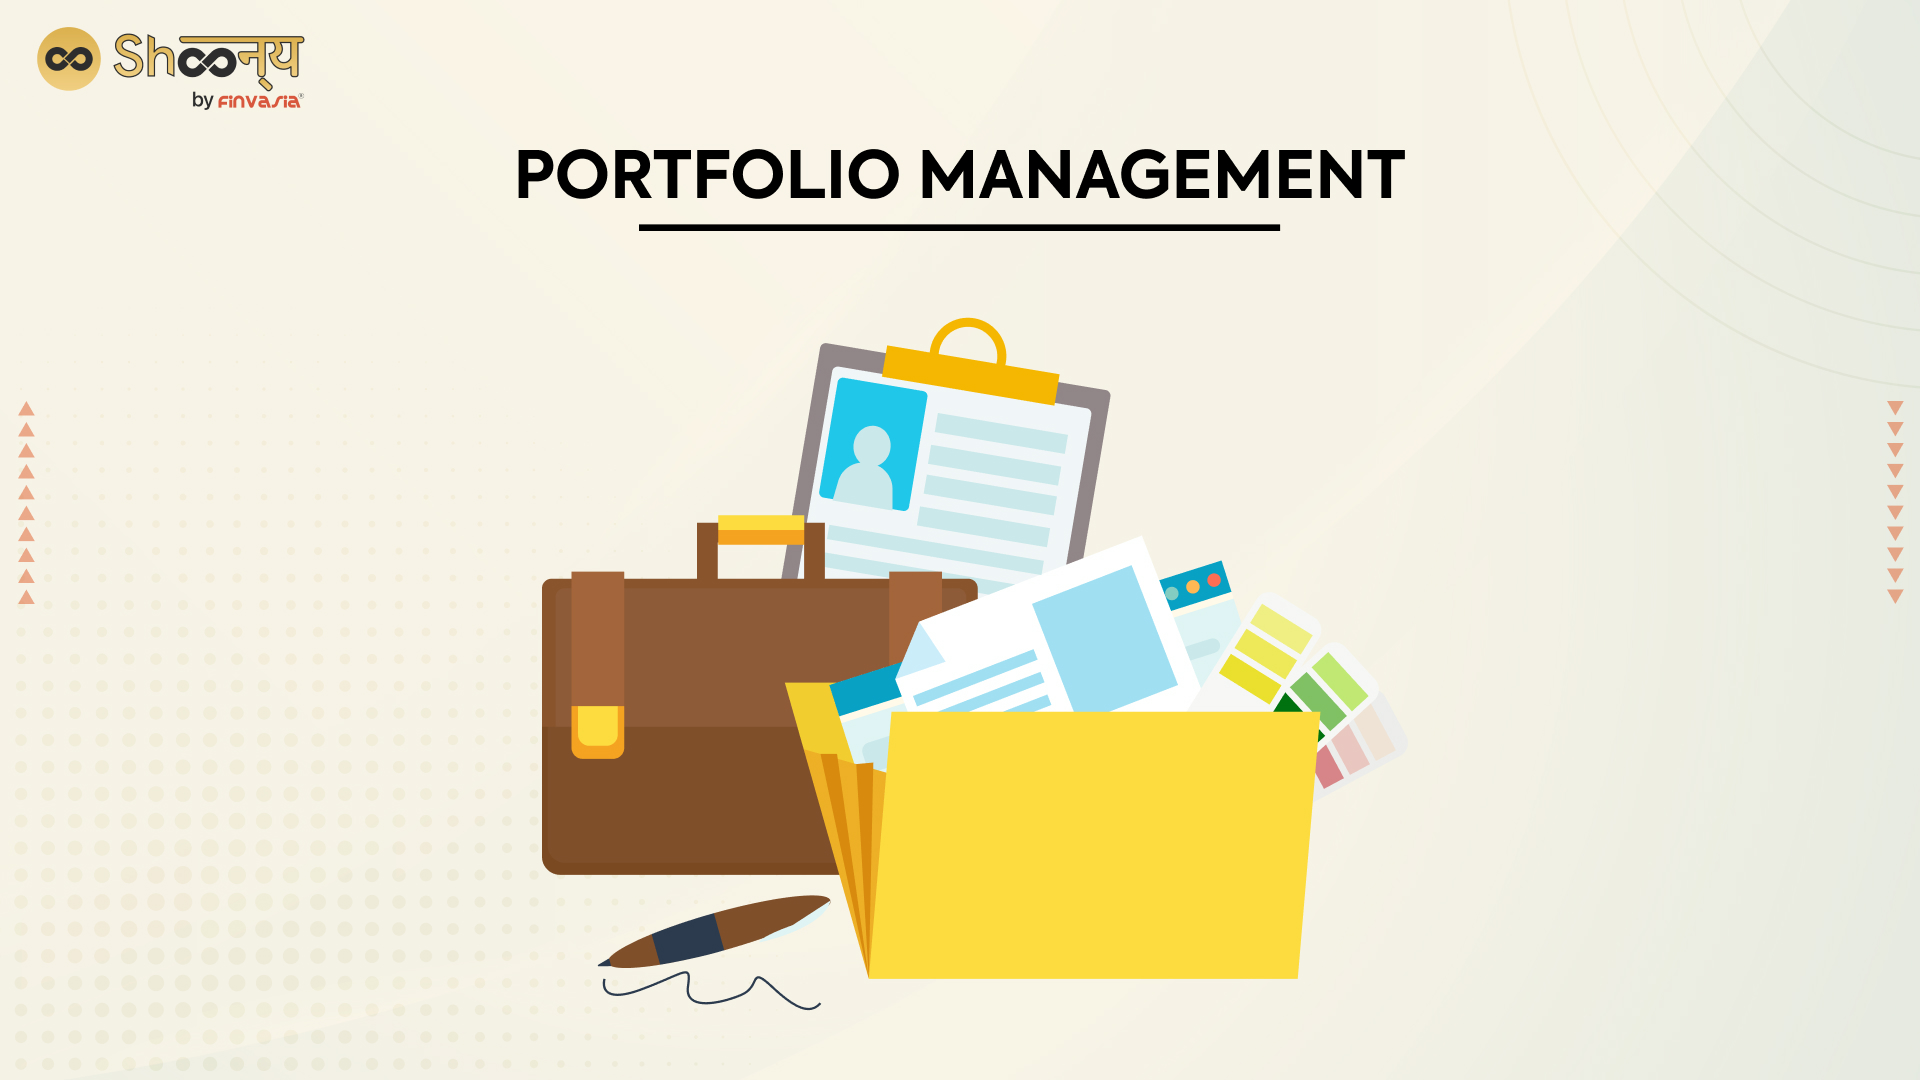 Portfolio management